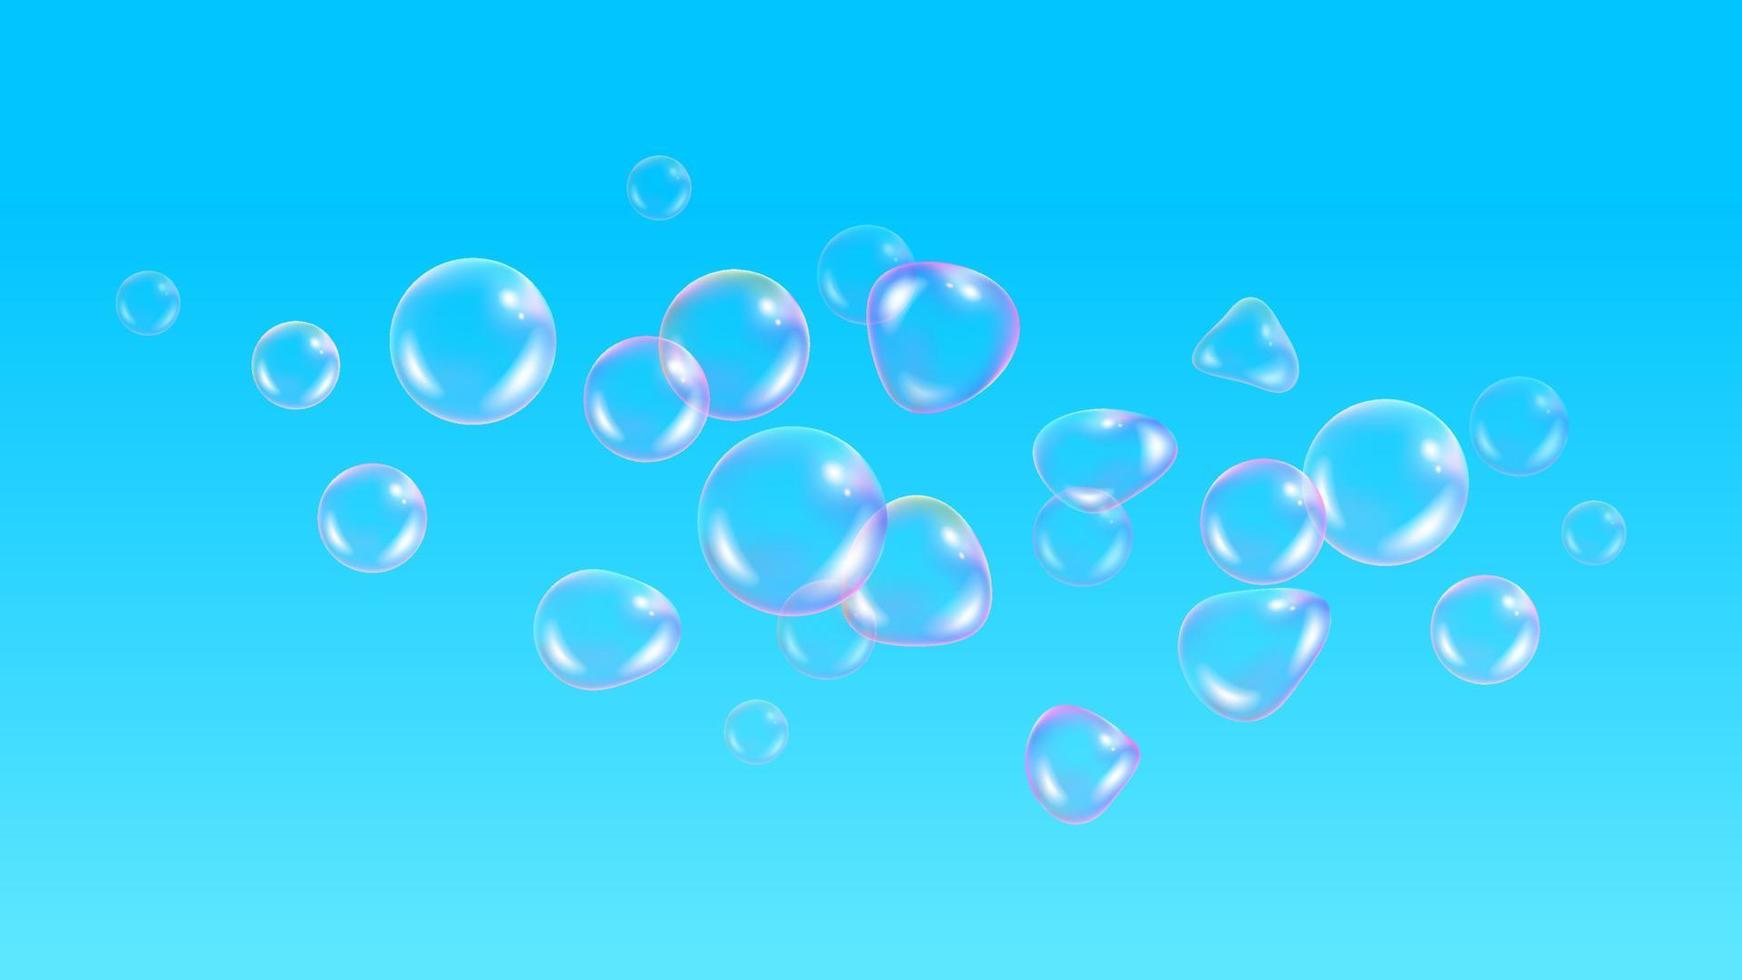 kinderen achtergrond, met ballonnen behang. realistische zeepbellen met regenboog reflectie op blauwe hemelachtergrond. vector water schuim bubbels. kleurrijke regenboog glazen bol.